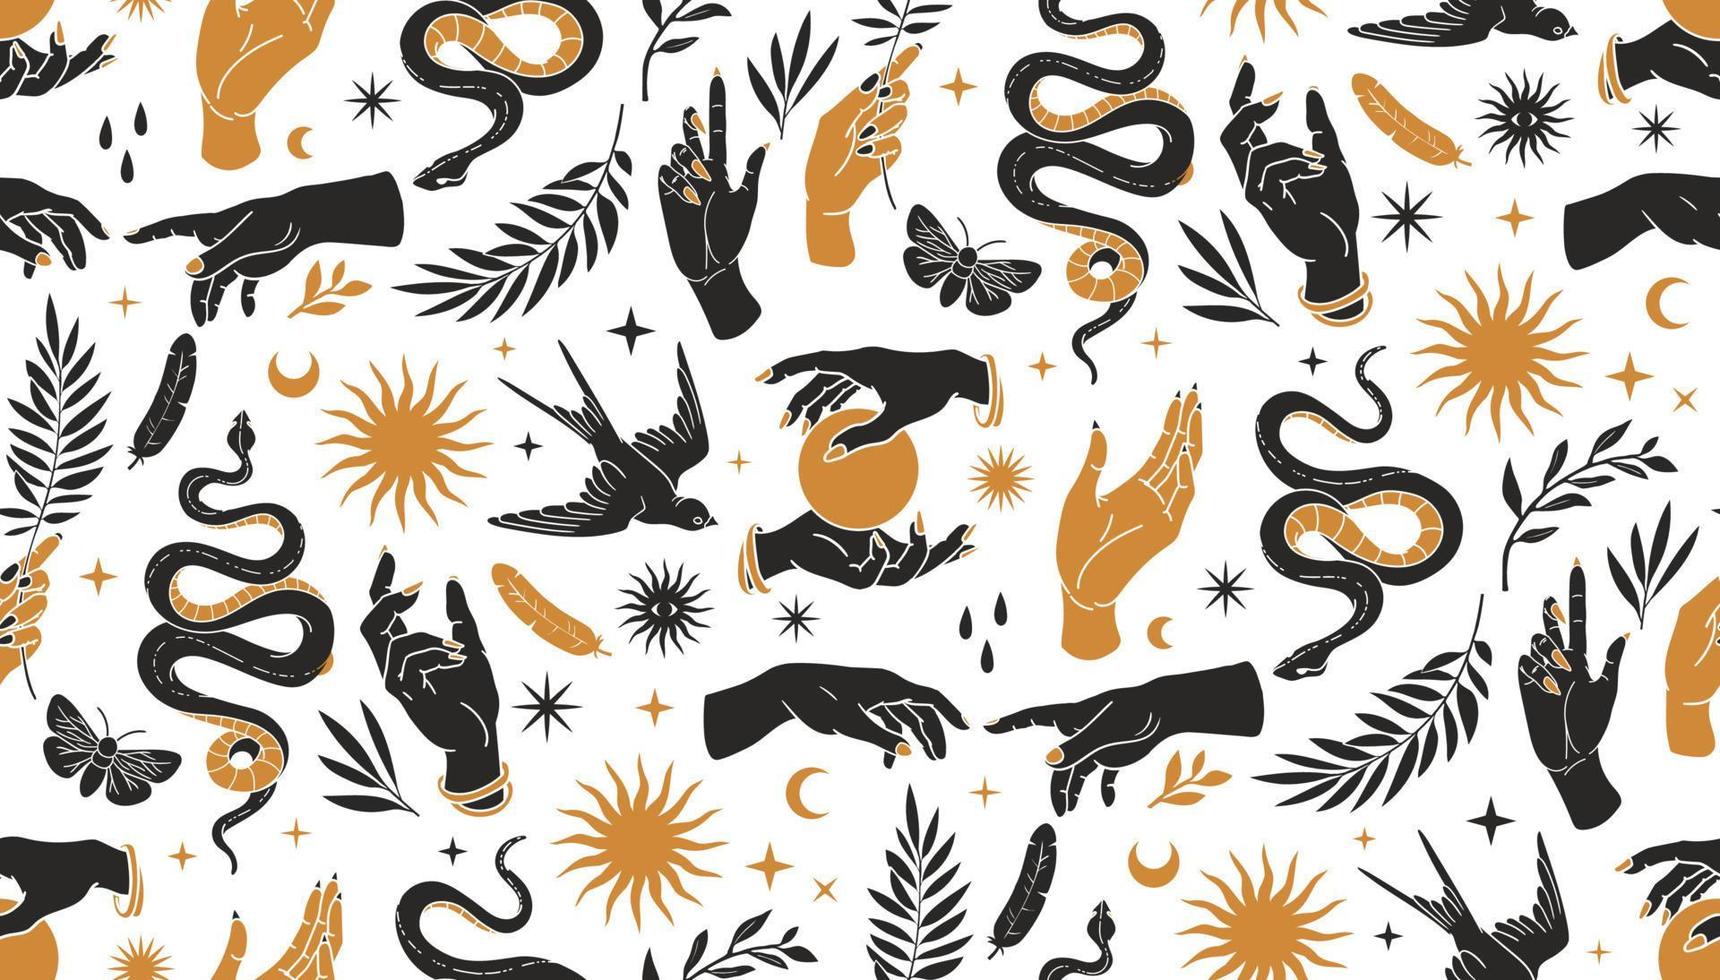 motif boho mystique harmonieux avec les mains, les serpents, la lune, le soleil, l'oiseau, la mite et les éléments floraux dans un style de tatouage à la mode. vecteur